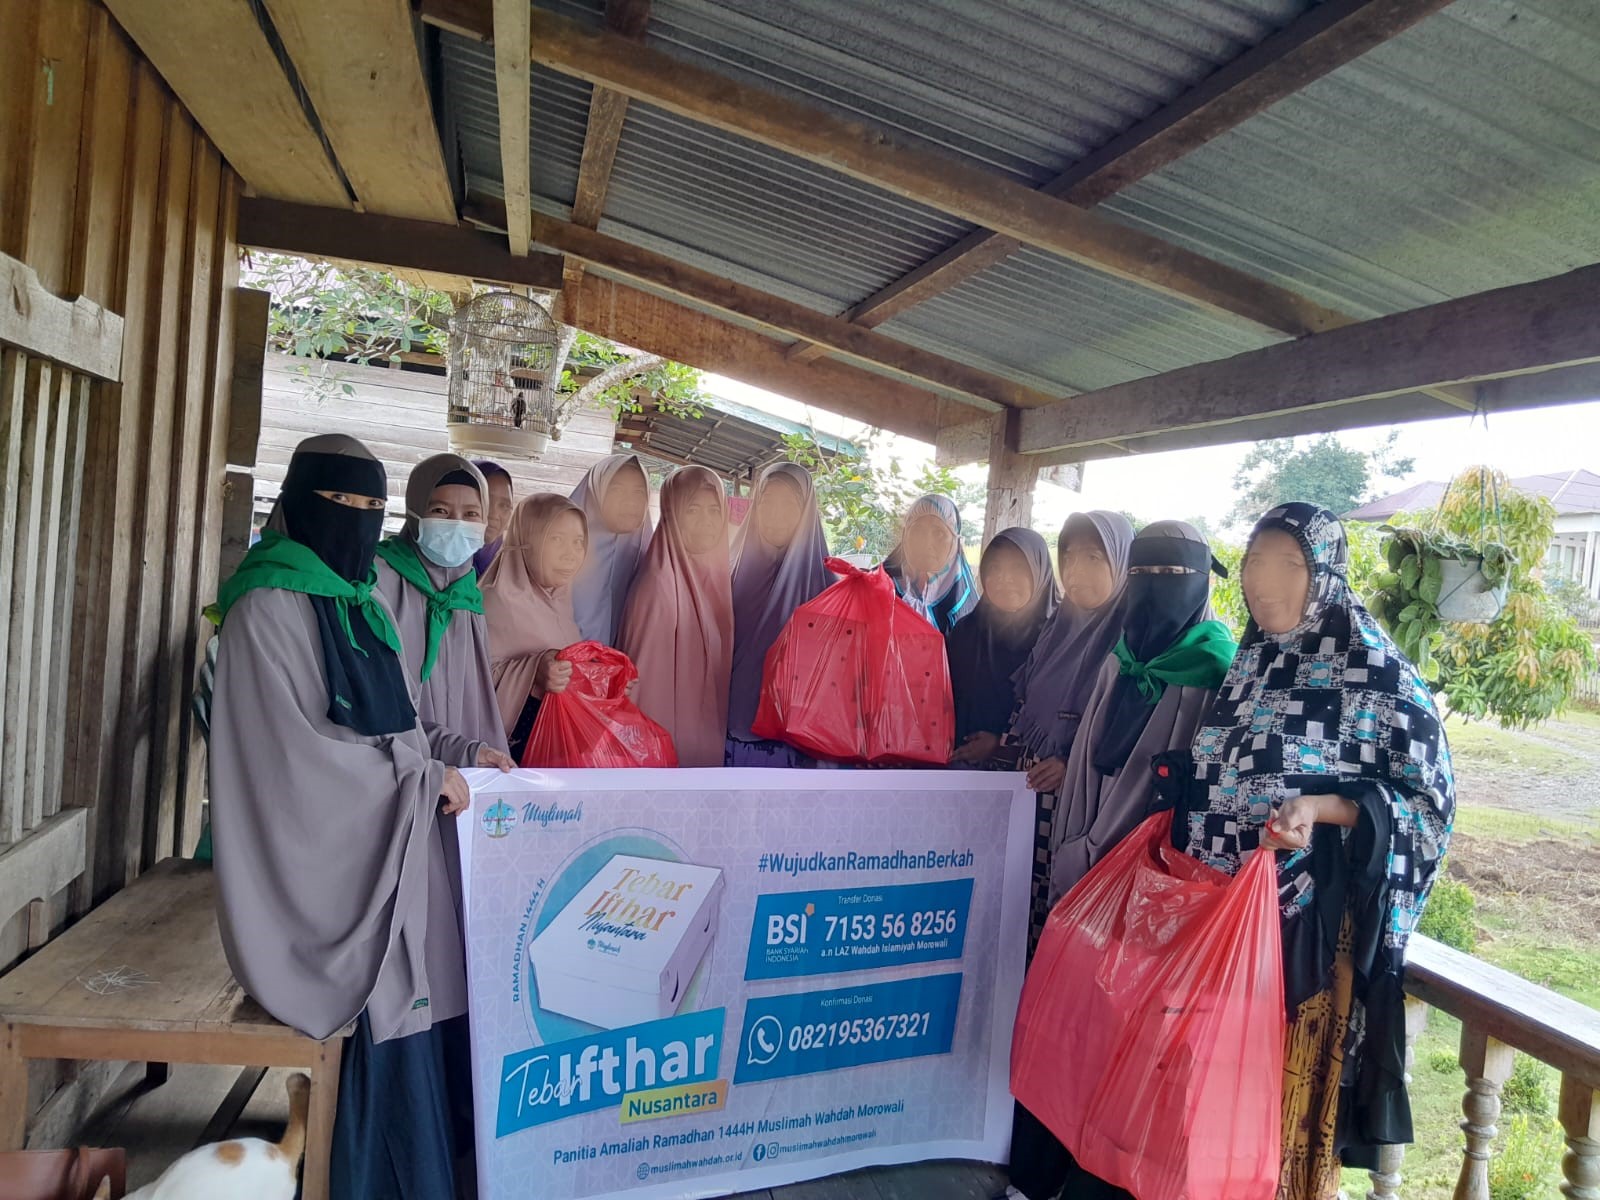 Ramadhan Berkah, Berbagi Dengan Sesama : Muslimah Wahdah Islamiyah Daerah Morowali Salurkan 750 Paket Iftar